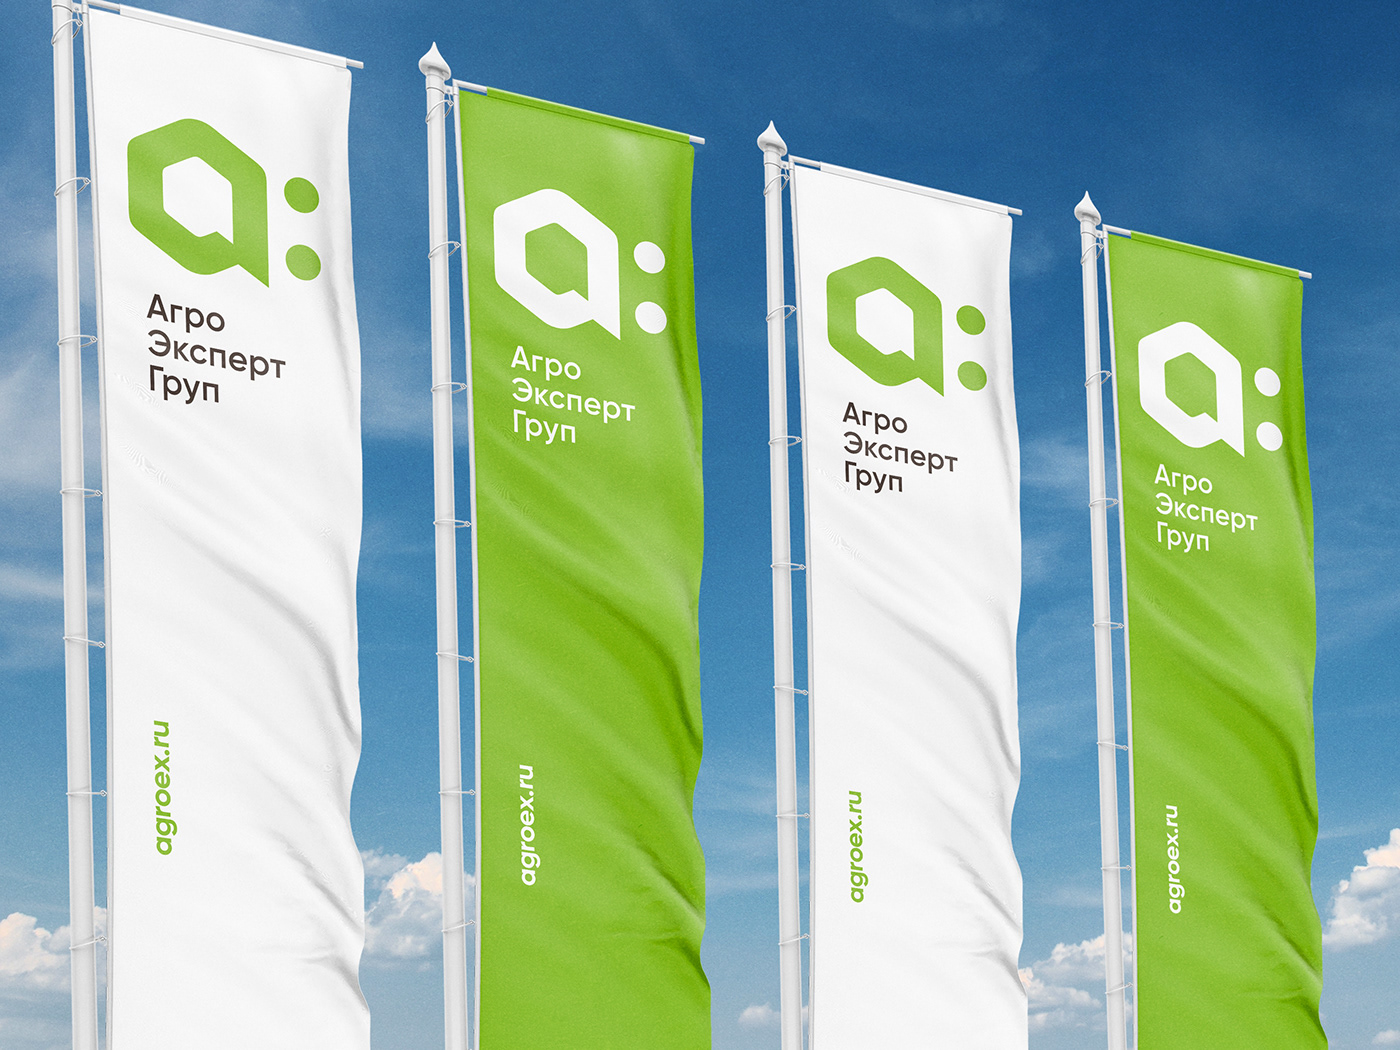 Agro Expert Group – Rebranding